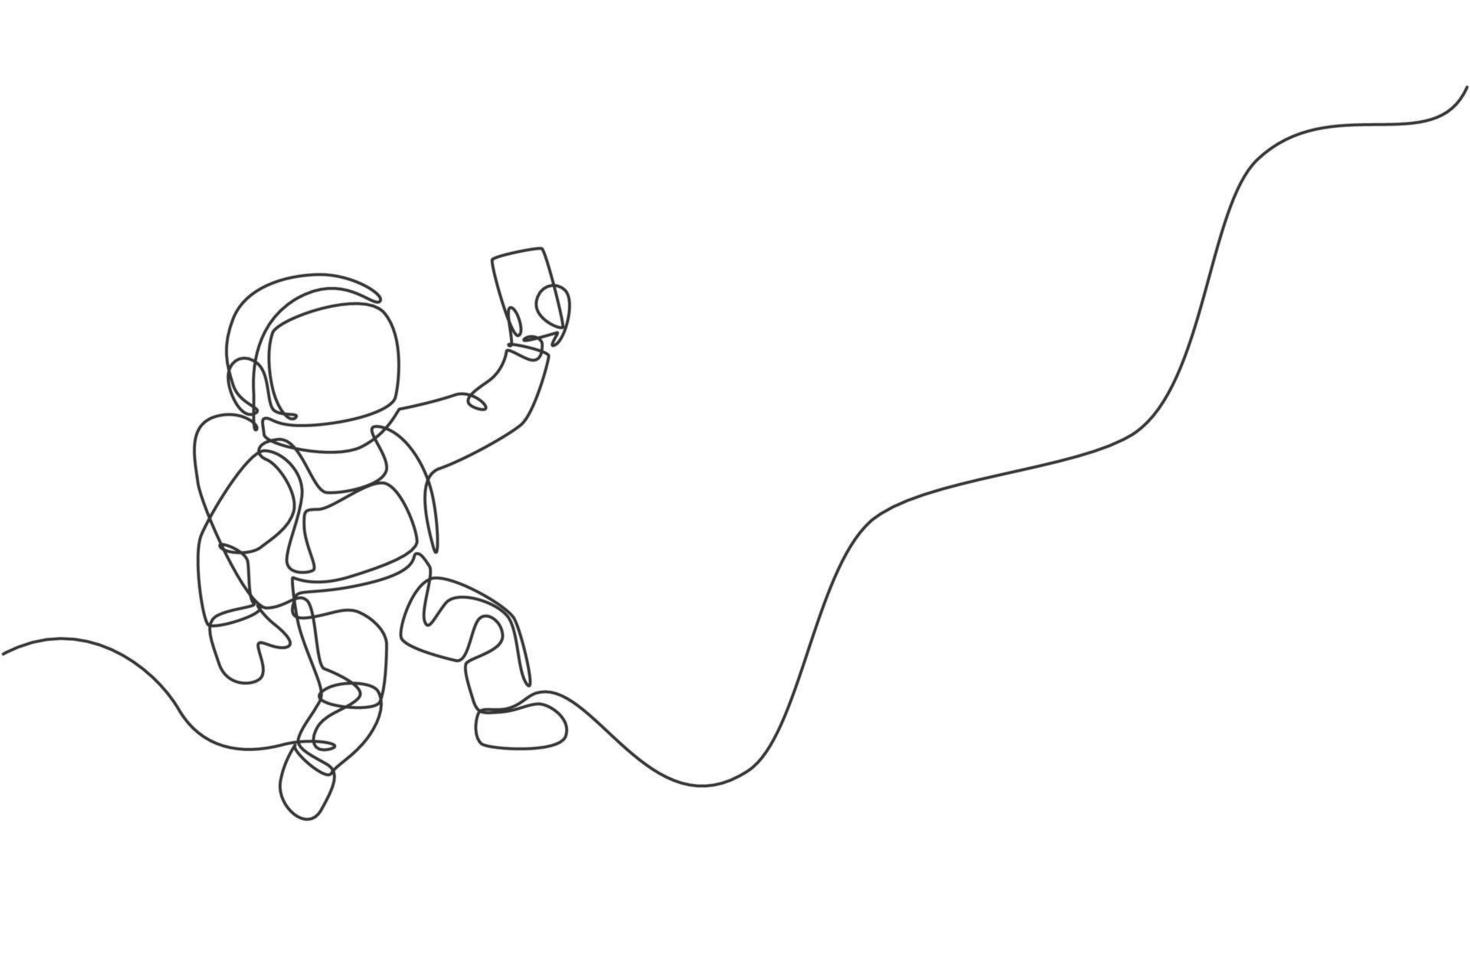 en kontinuerlig linjeteckning av kosmonaut som utforskar yttre rymden. astronaut selfie med smartphone -enhet. fantasi kosmisk galax upptäckt koncept. dynamisk enkel linje rita design vektor illustration